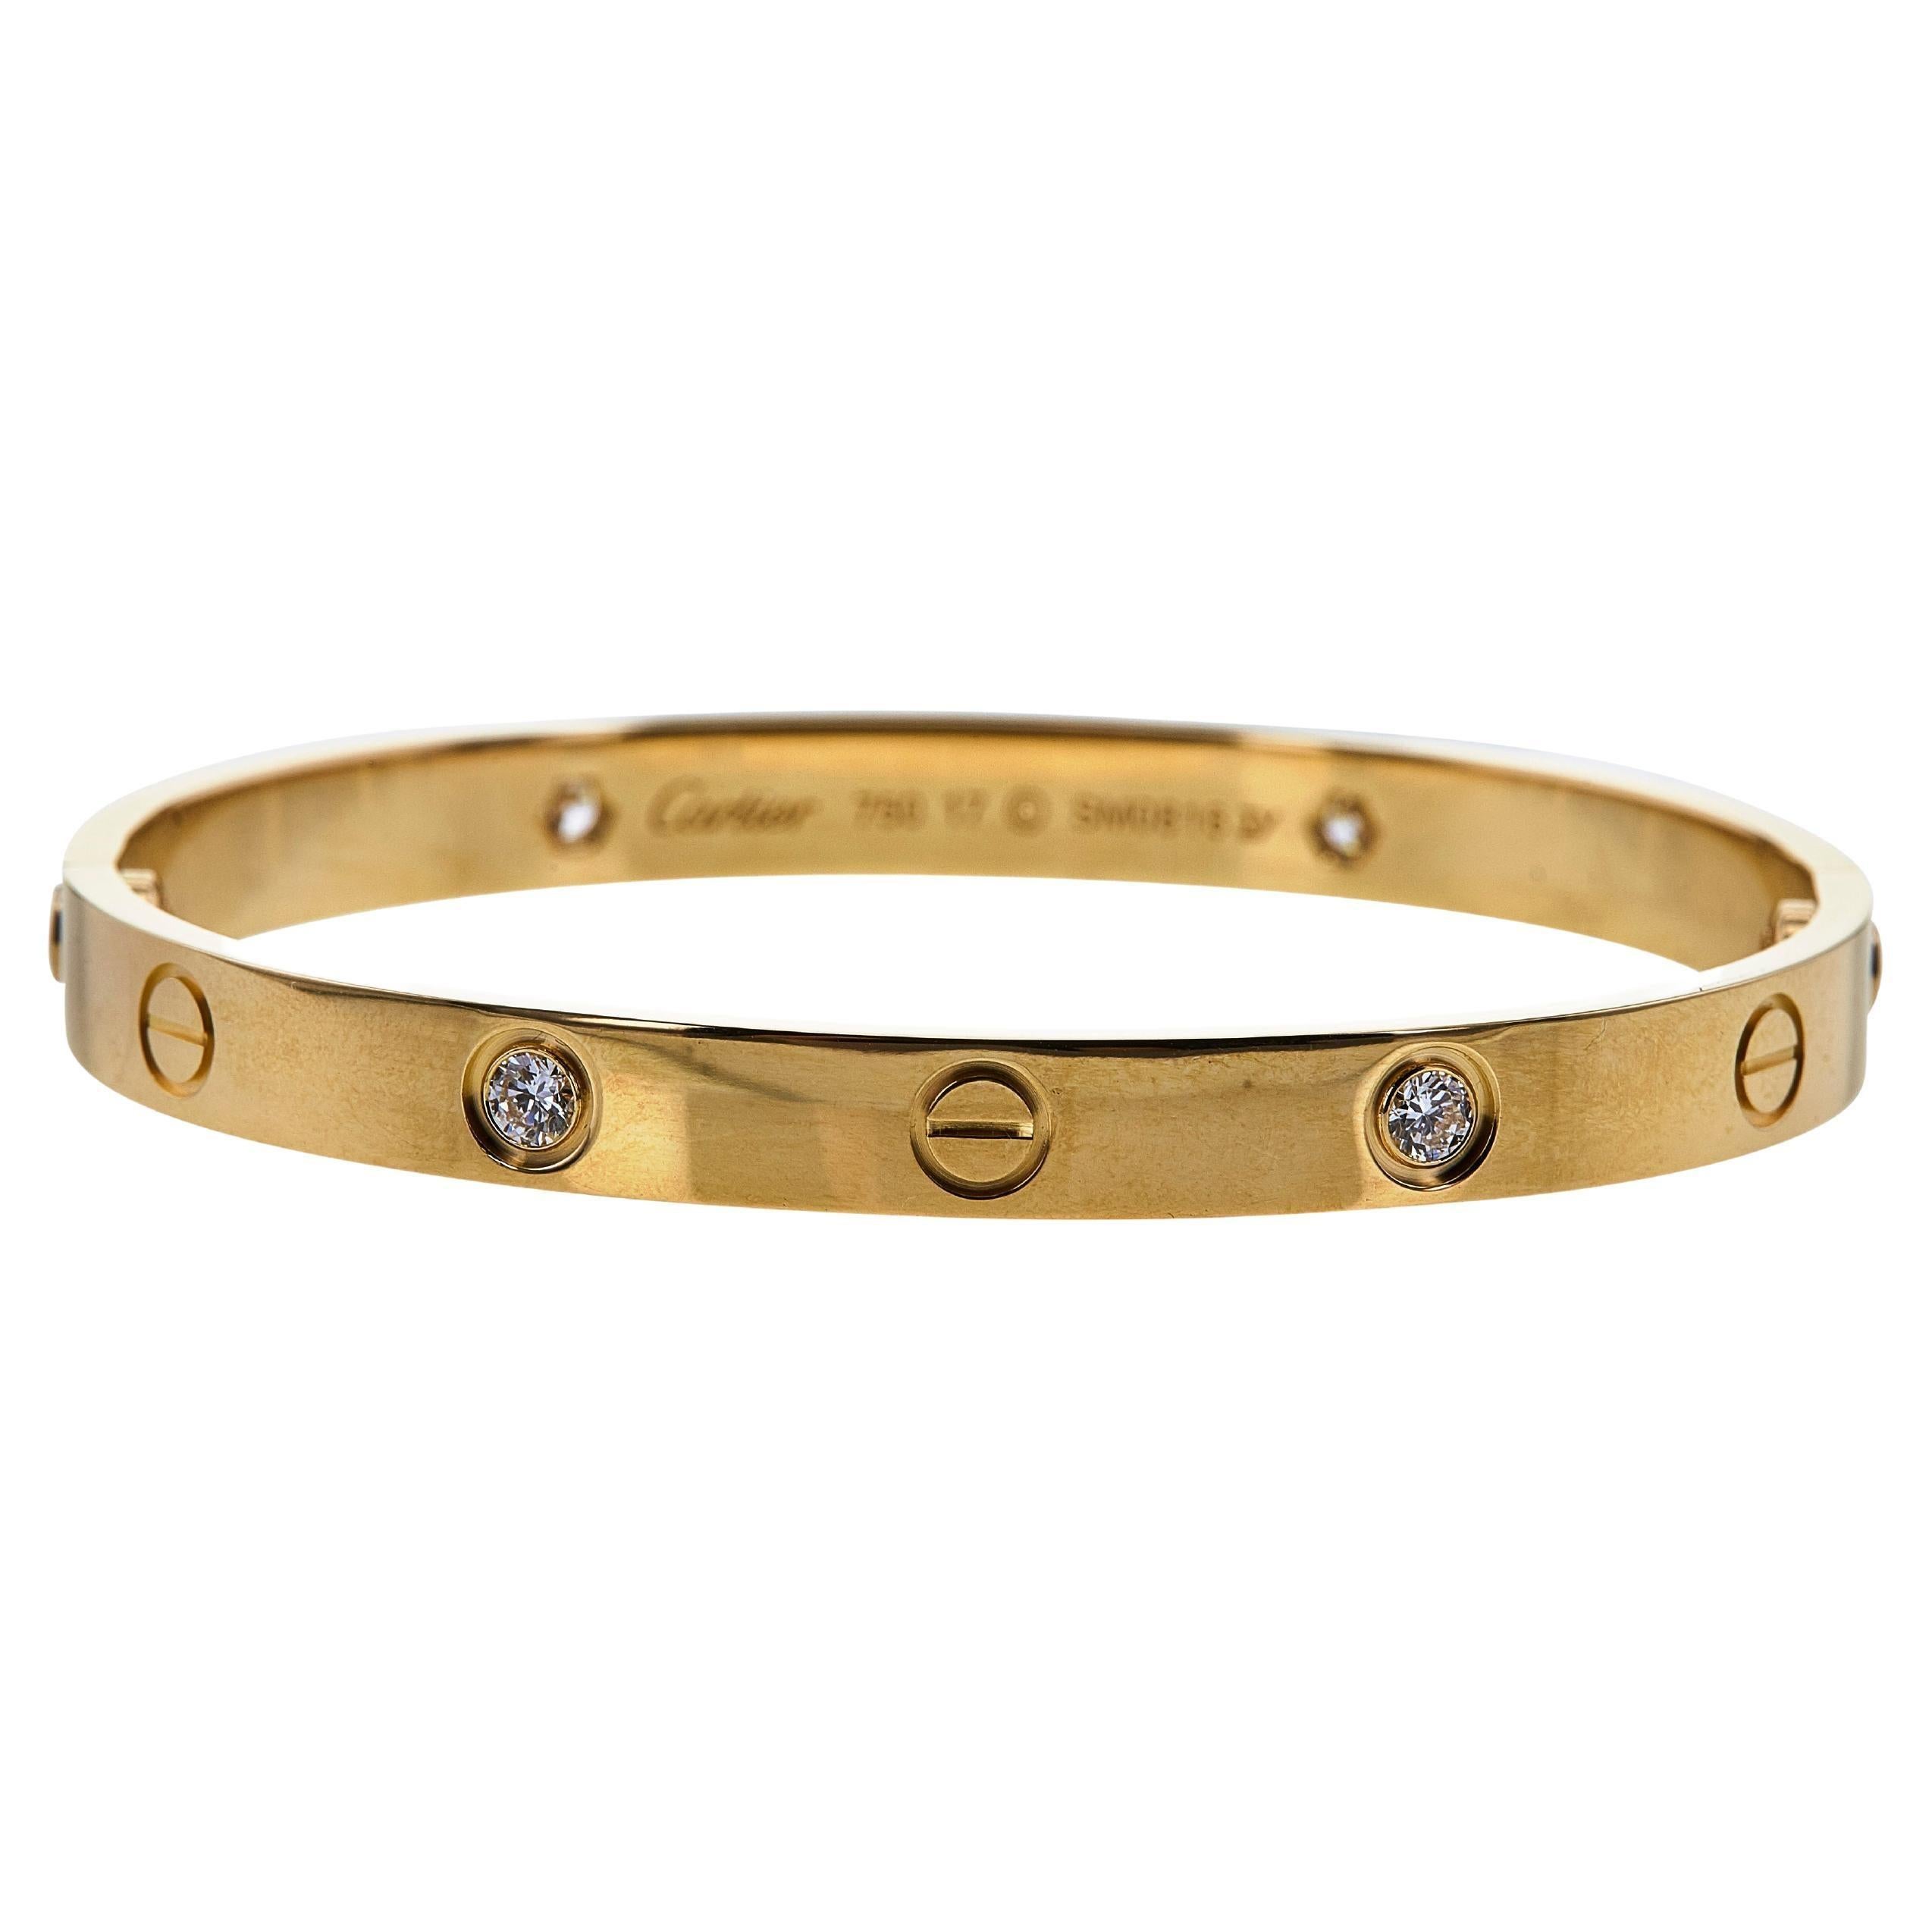 Authentisches Armband 'Love' von Cartier aus 18 Karat Gelbgold, besetzt mit vier runden Diamanten im Brillantschliff mit einem geschätzten Gesamtgewicht von 0,42 Karat. Größe 17. Signiert Cartier, 750, mit Seriennummer und Punzen. Das Armband wird